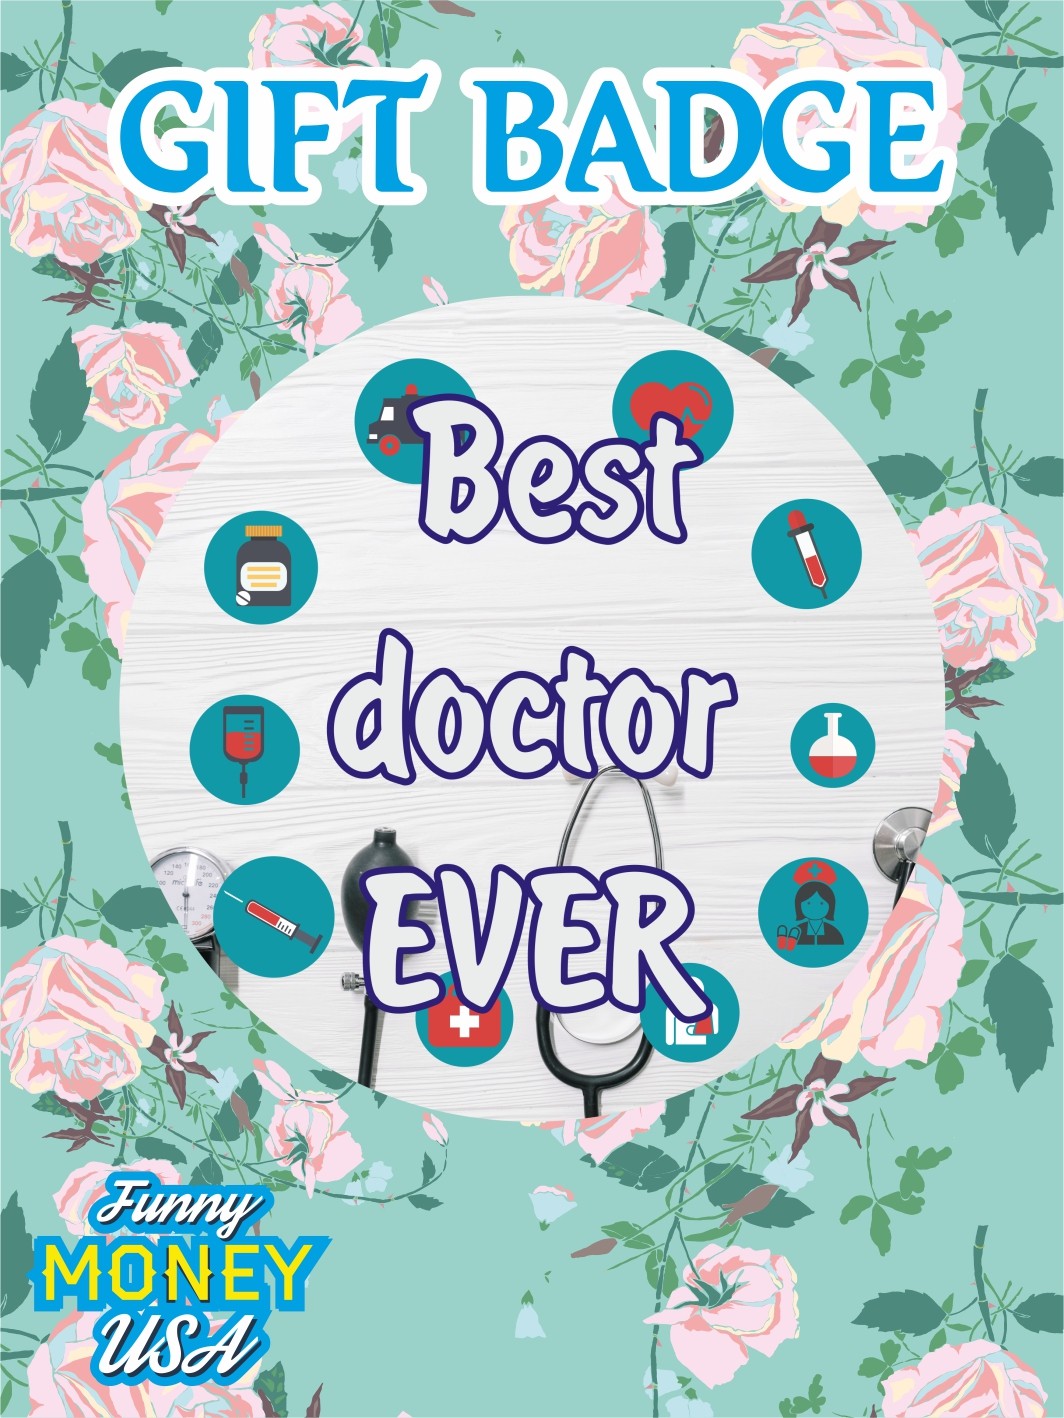 Gift badges "Best doctor ever"